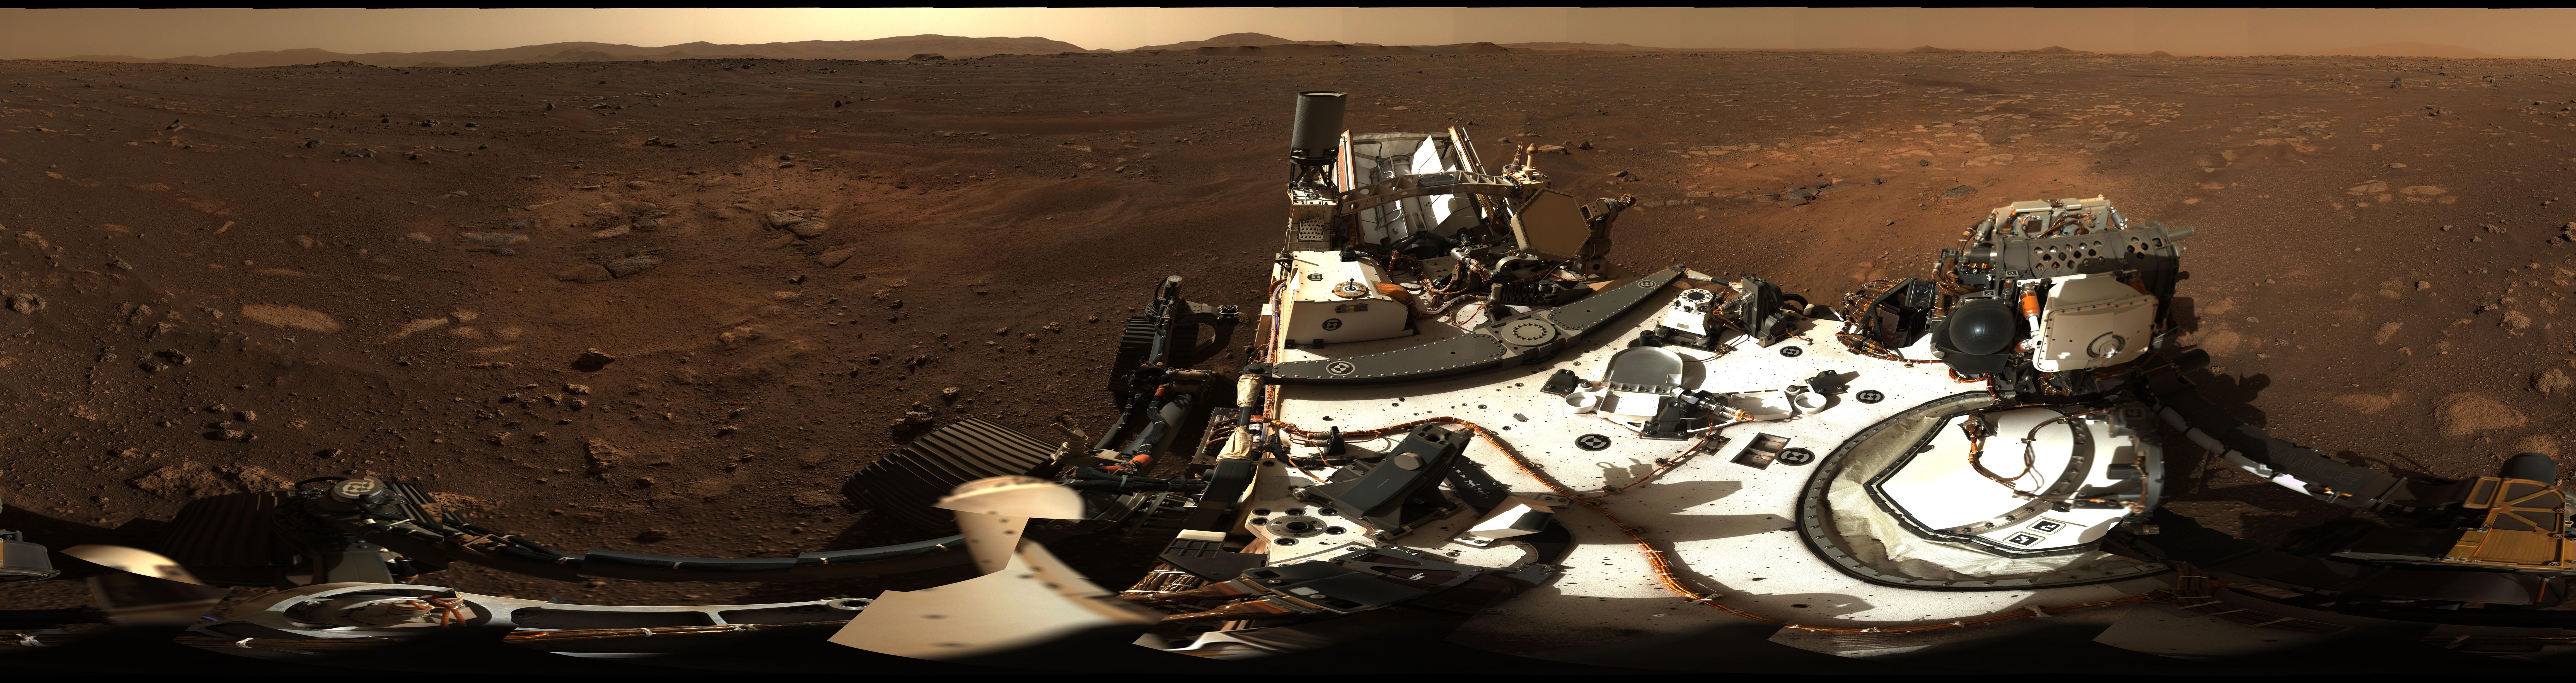 パーサヴィアランスが撮影した火星のパノラマ画像。